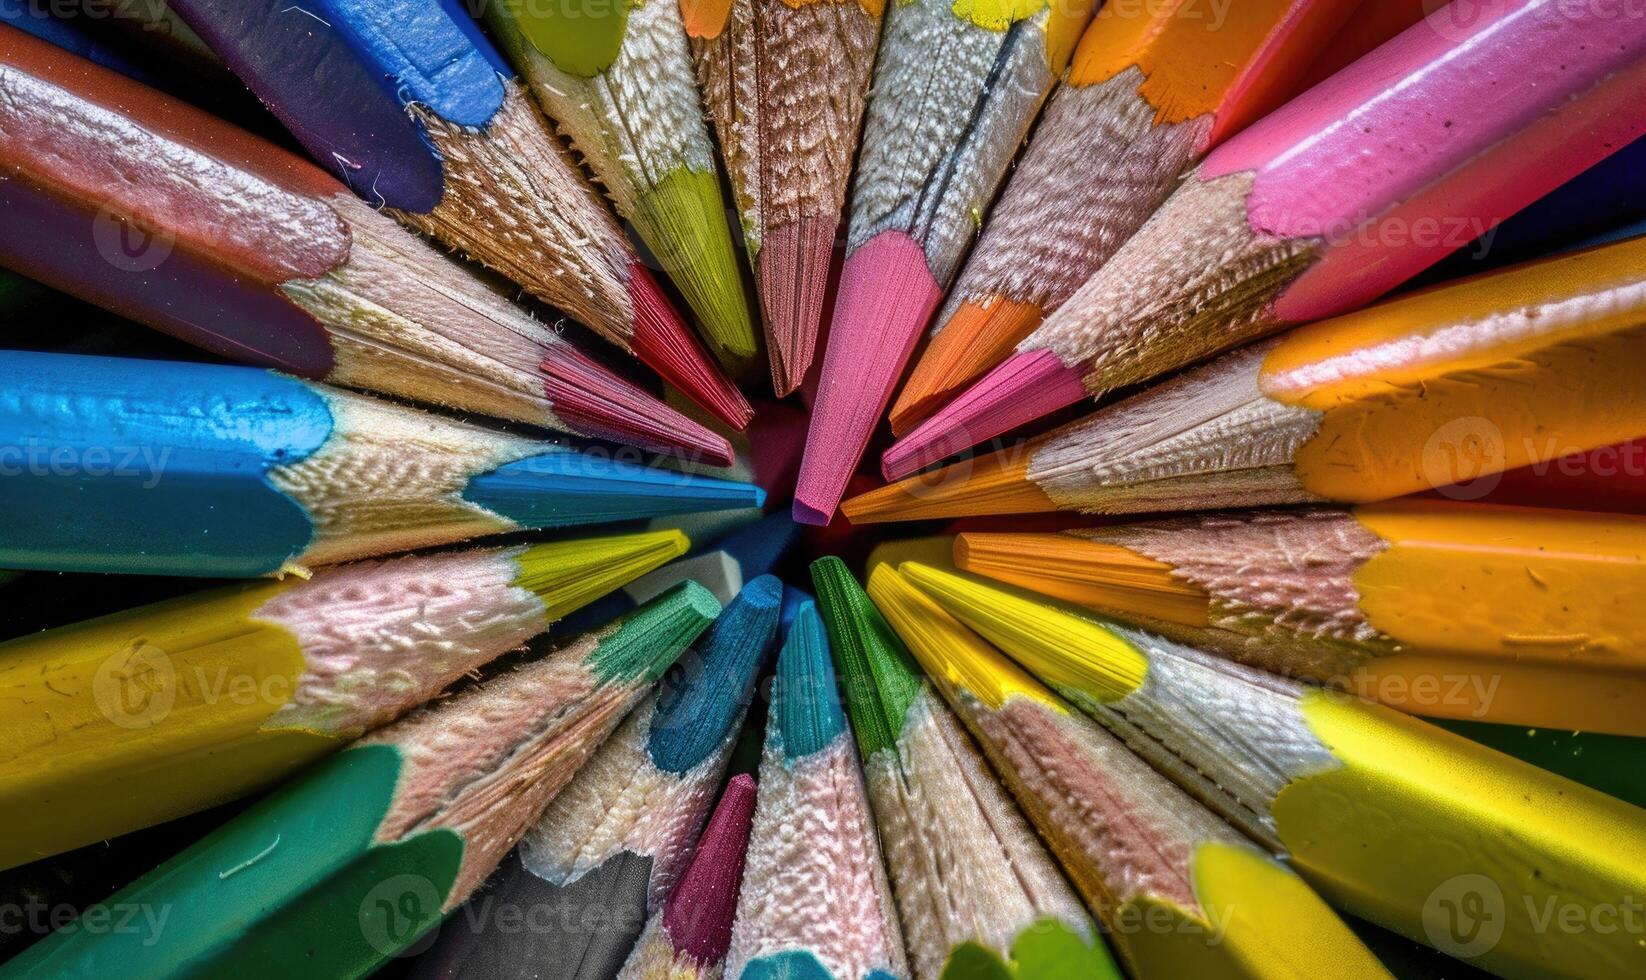 coloré des crayons arrangé dans une circulaire modèle photo